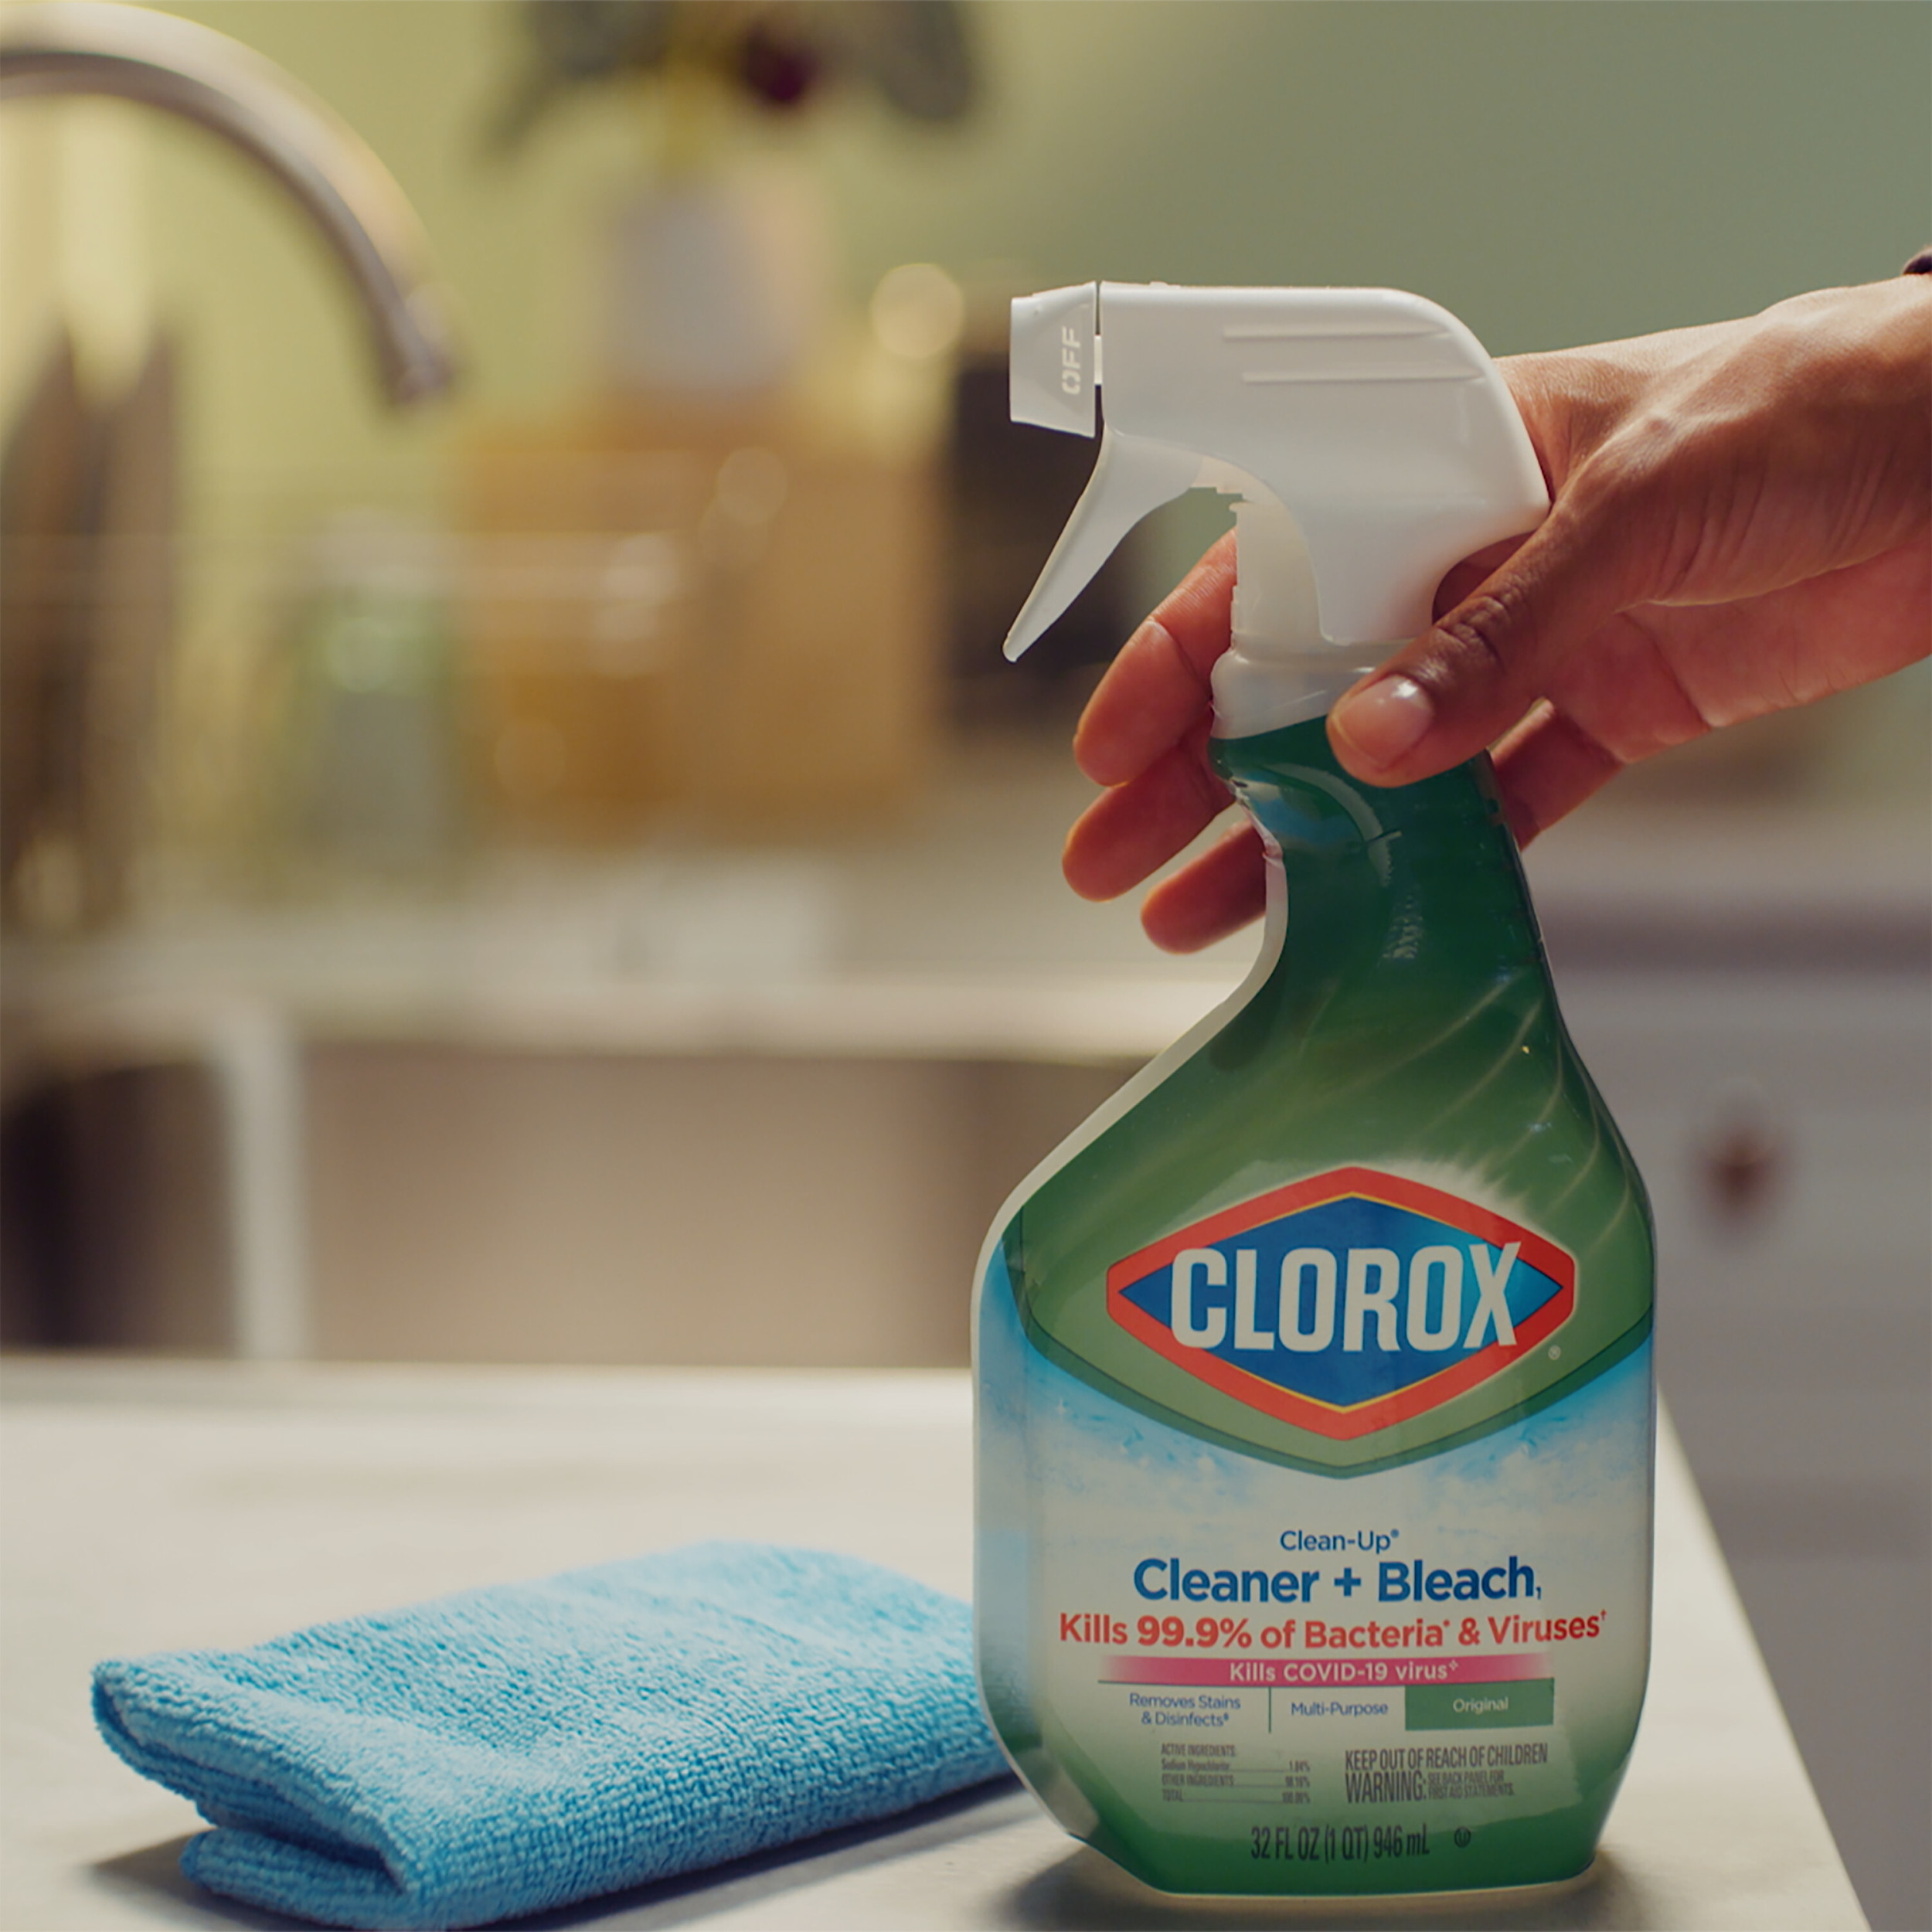 Clorox Clean-Up Cleaner + Bleach - 32 fl oz